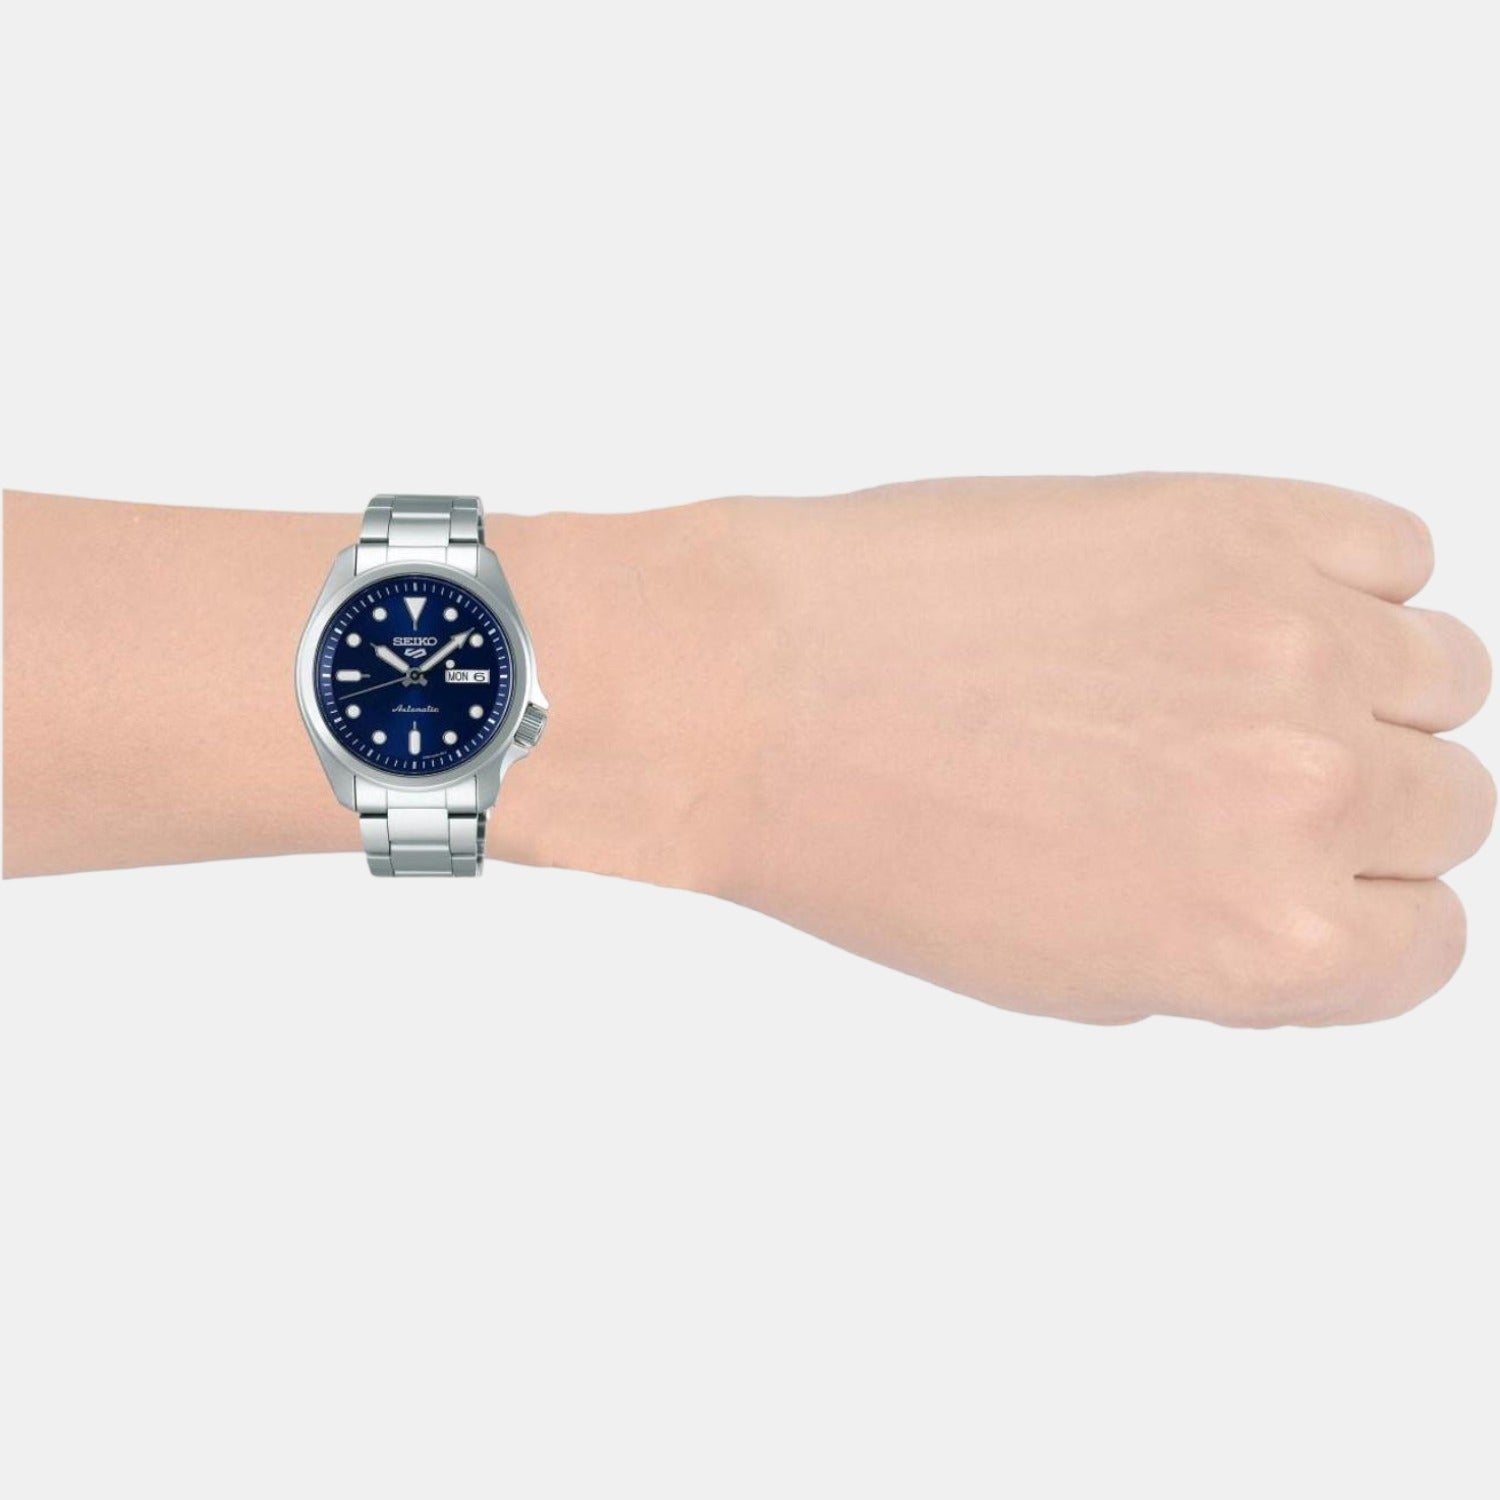 Seiko 5 SRPE53K1 ~ Men's Blue Dial Watch